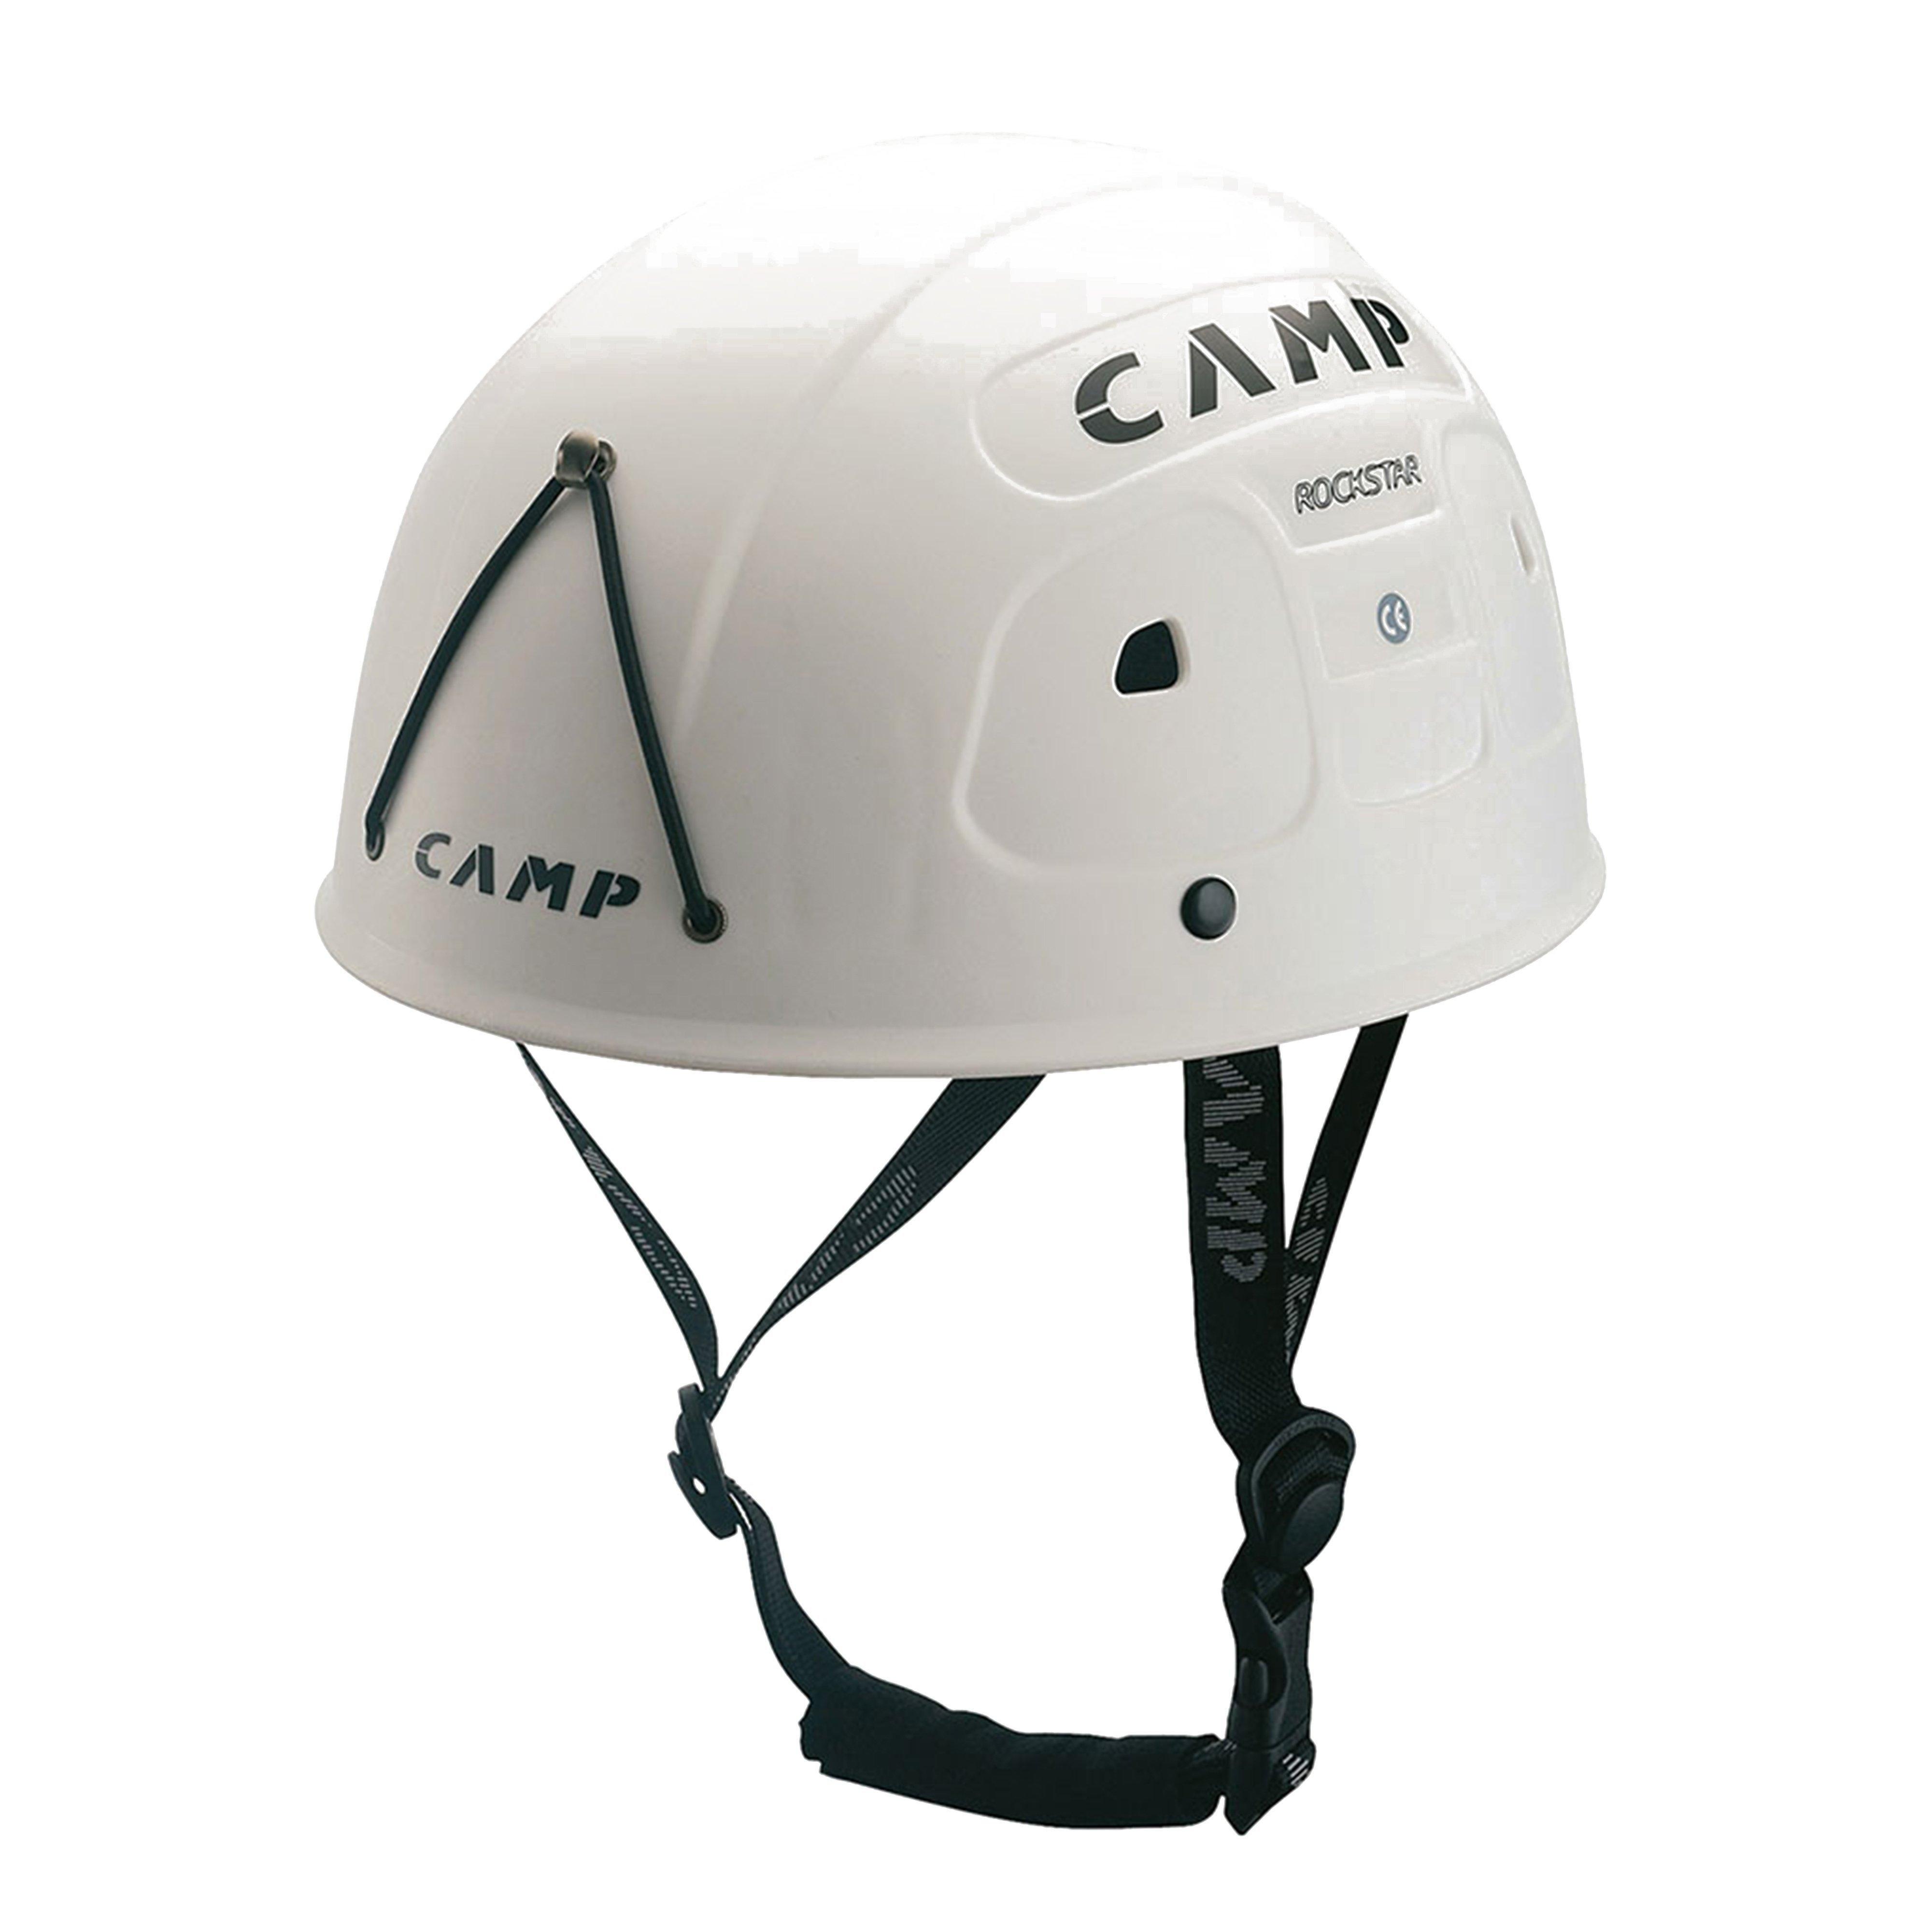 Camp Rockstar Climbing Helmet Review